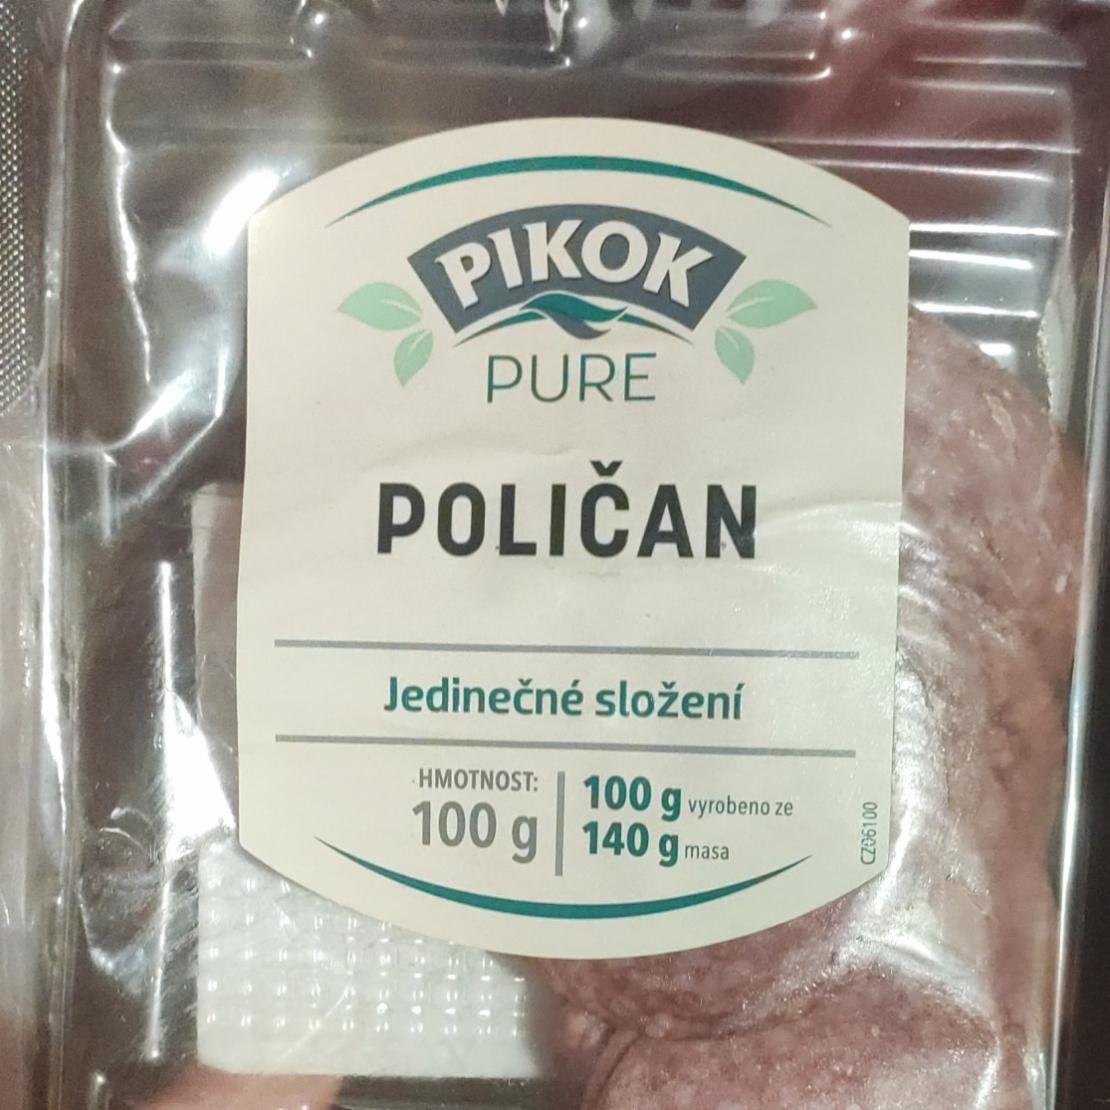 Фото - Pure Poličan masný výrobek Pikok